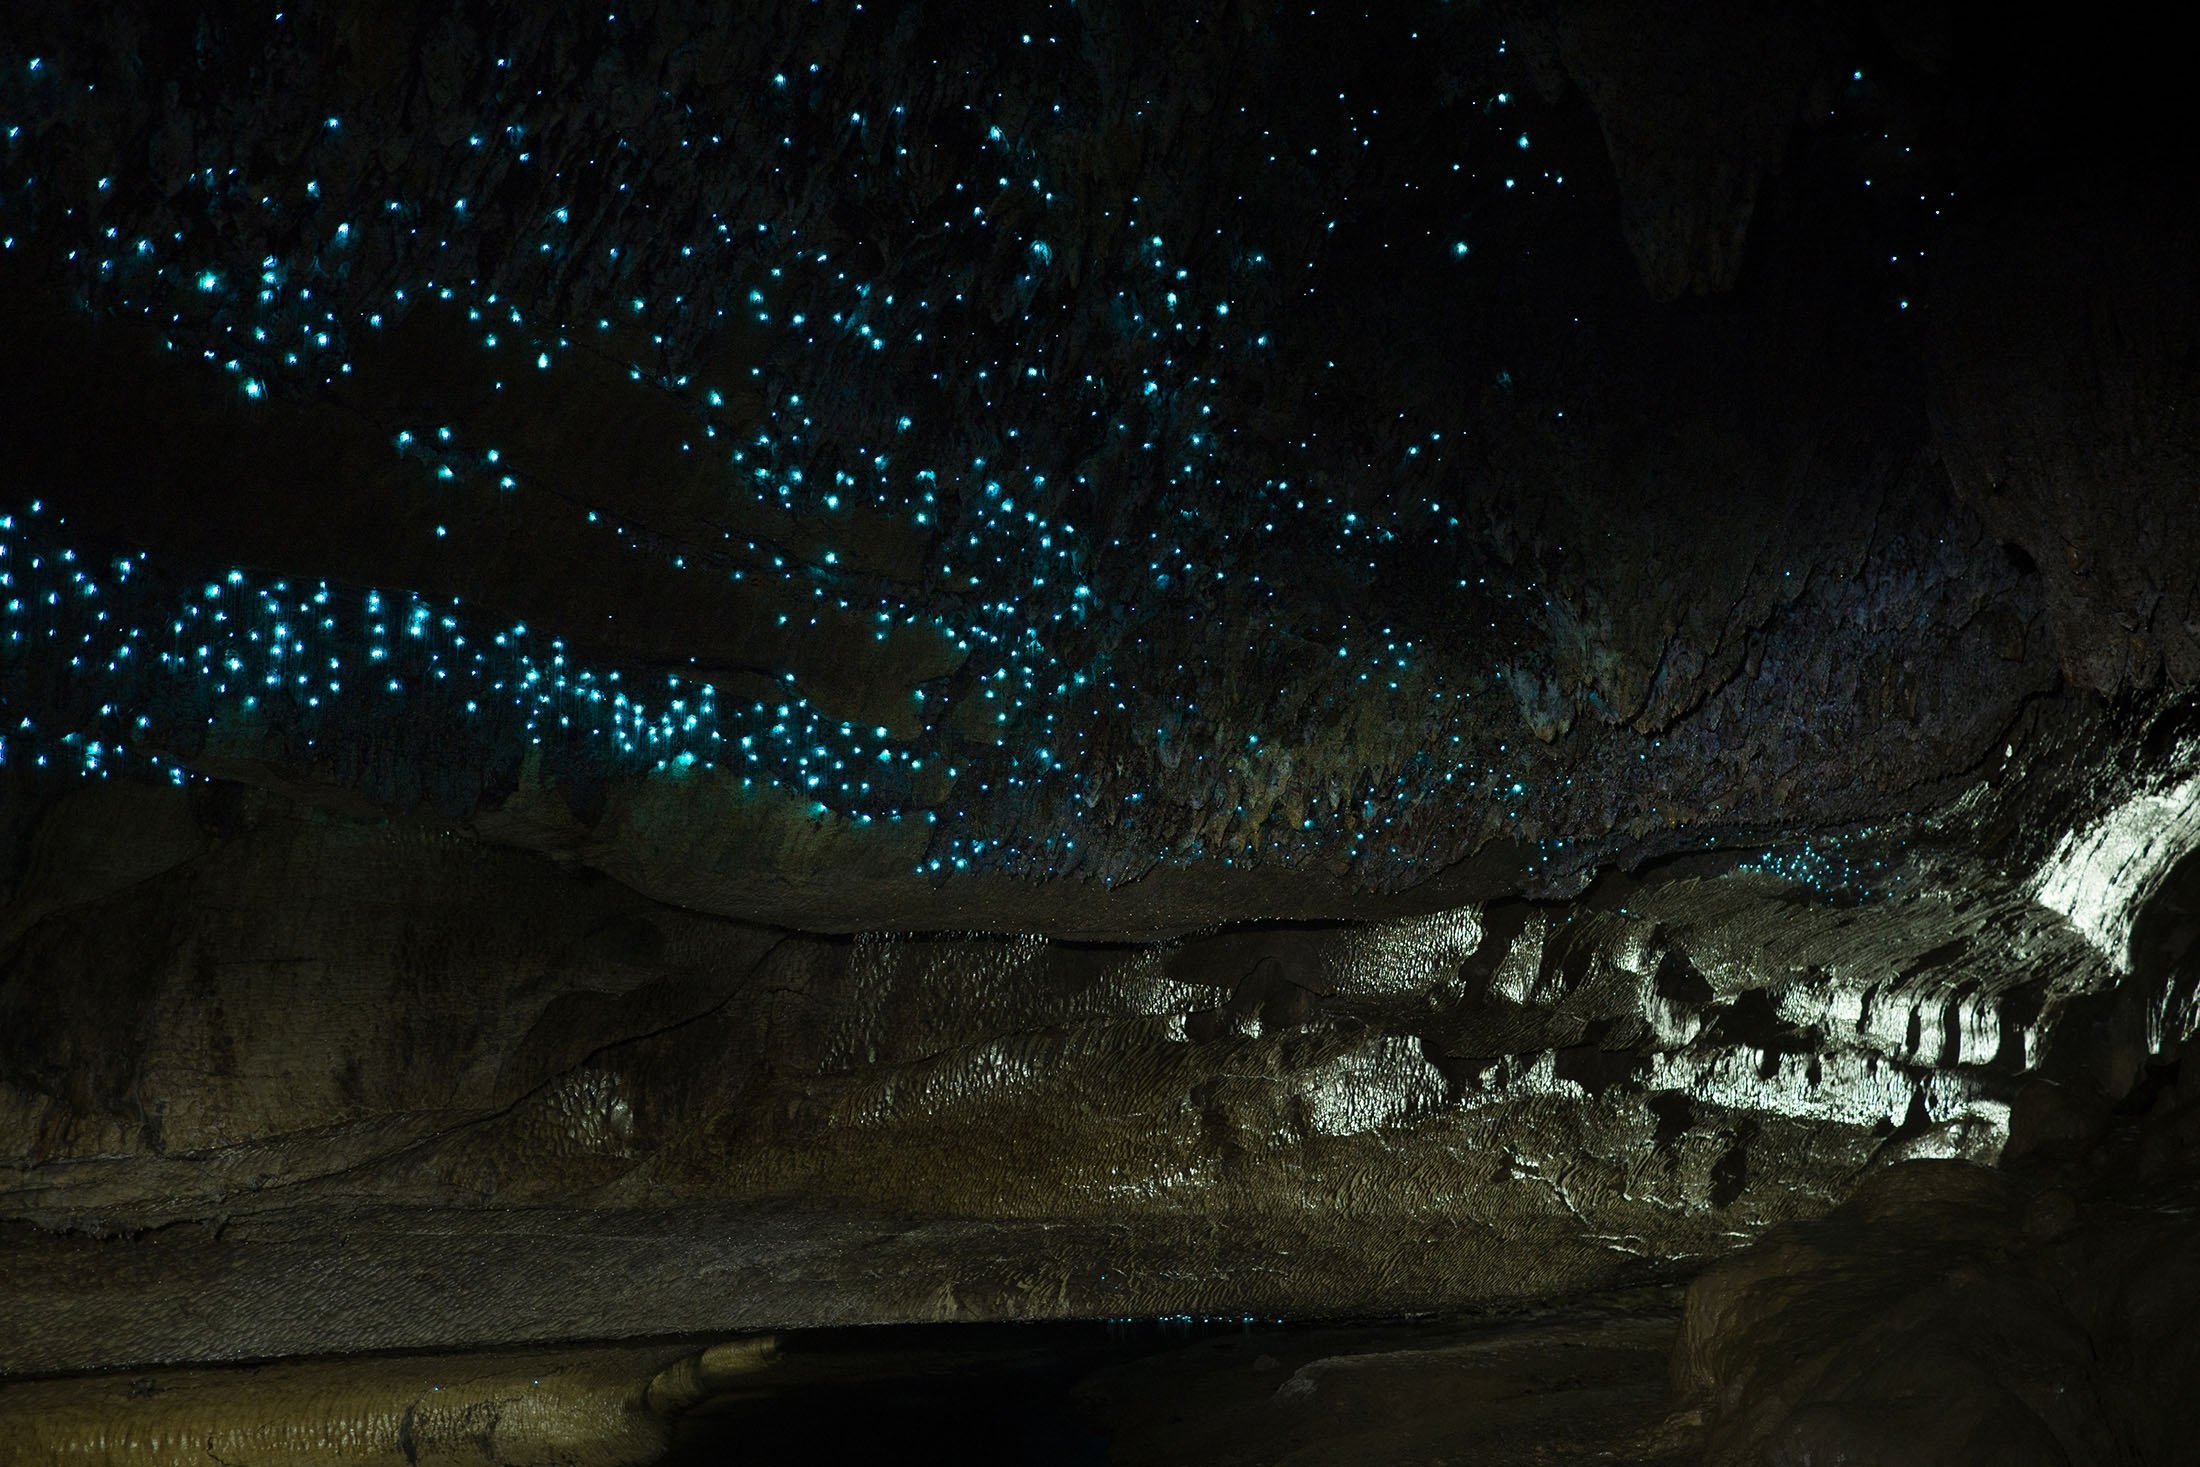 Waitomo Glowworm adalah gua yang terletak di Selandia Baru, yang dikenal dengan populasi Arachnocampa luminosa, spesies glowworm yang ditemukan secara eksklusif di negara ini.  (Foto Shutterstock)